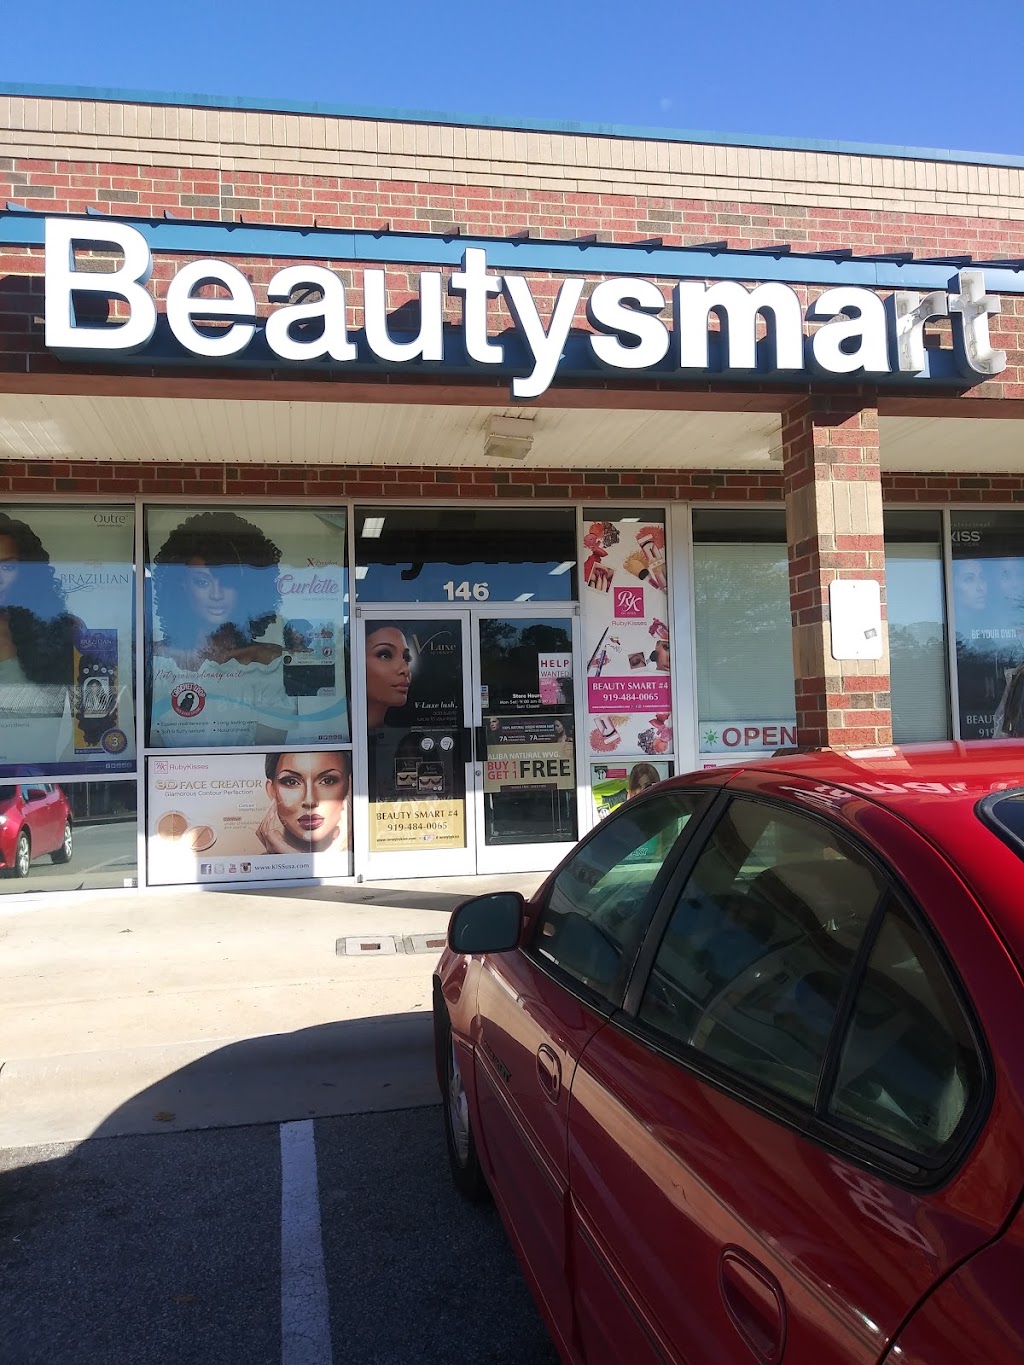 Beautysmart | 3825 S Roxboro St UNIT 146, Durham, NC 27713 | Phone: (919) 484-0065